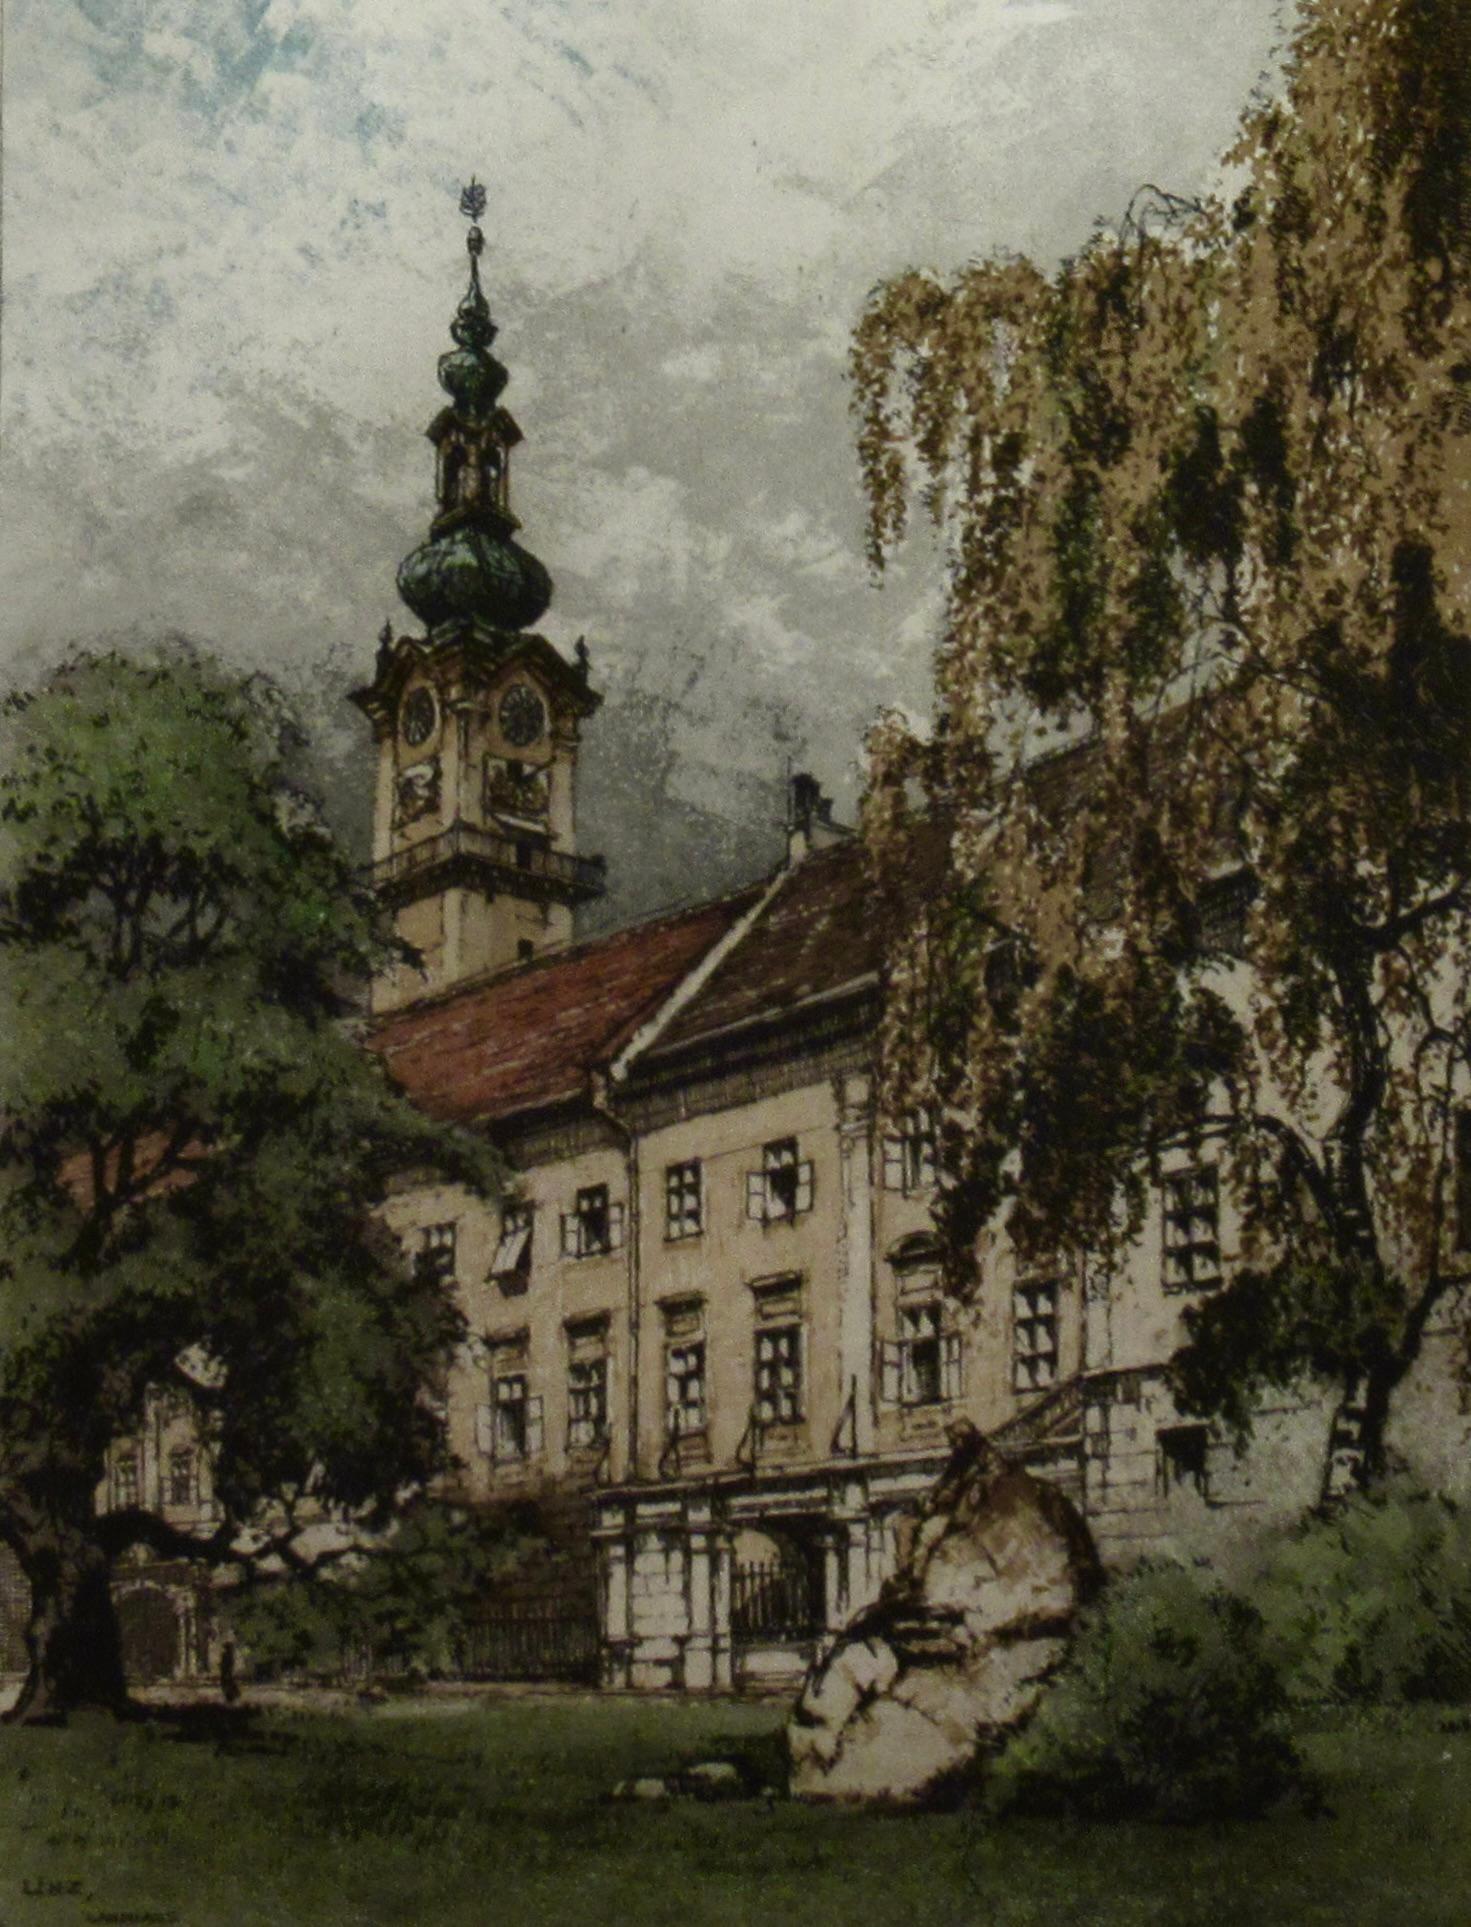 Linz Landhaus, Austria - Realist Print by Josef Eidenberger